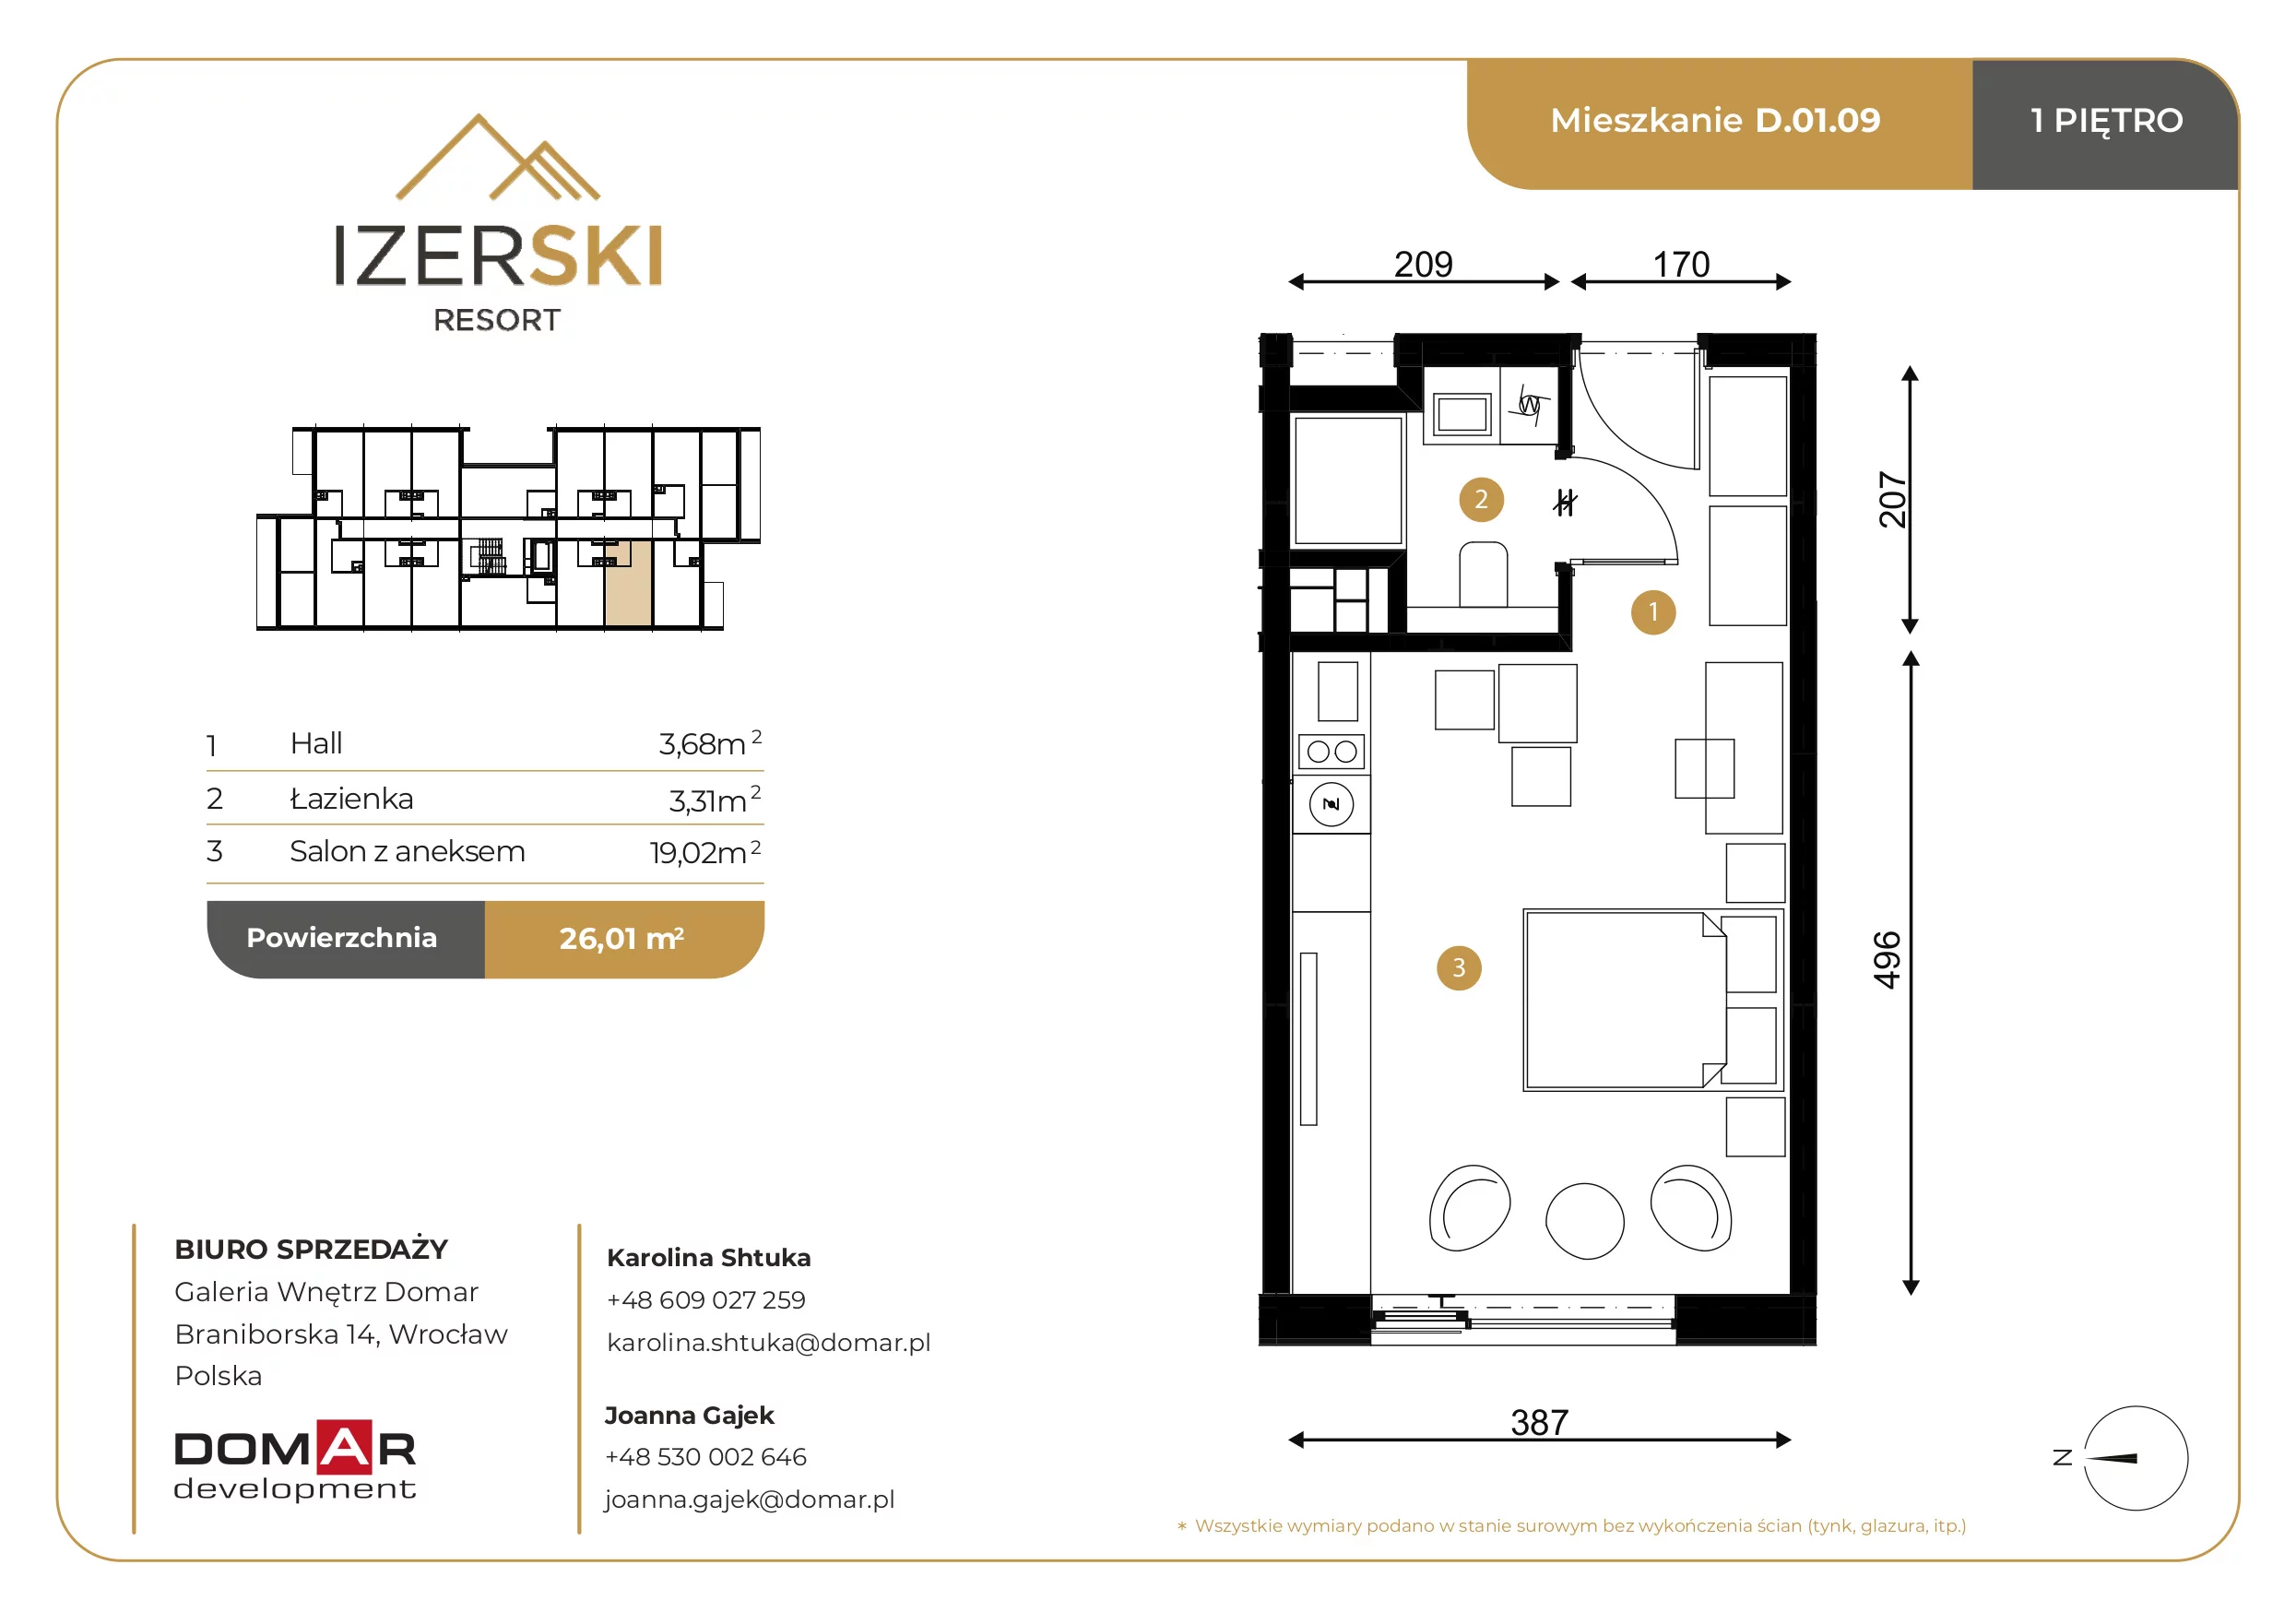 Apartament inwestycyjny 26,01 m², piętro 1, oferta nr D.01.09, IzerSKI Resort, Świeradów-Zdrój, ul. Jana Kilińskiego 2